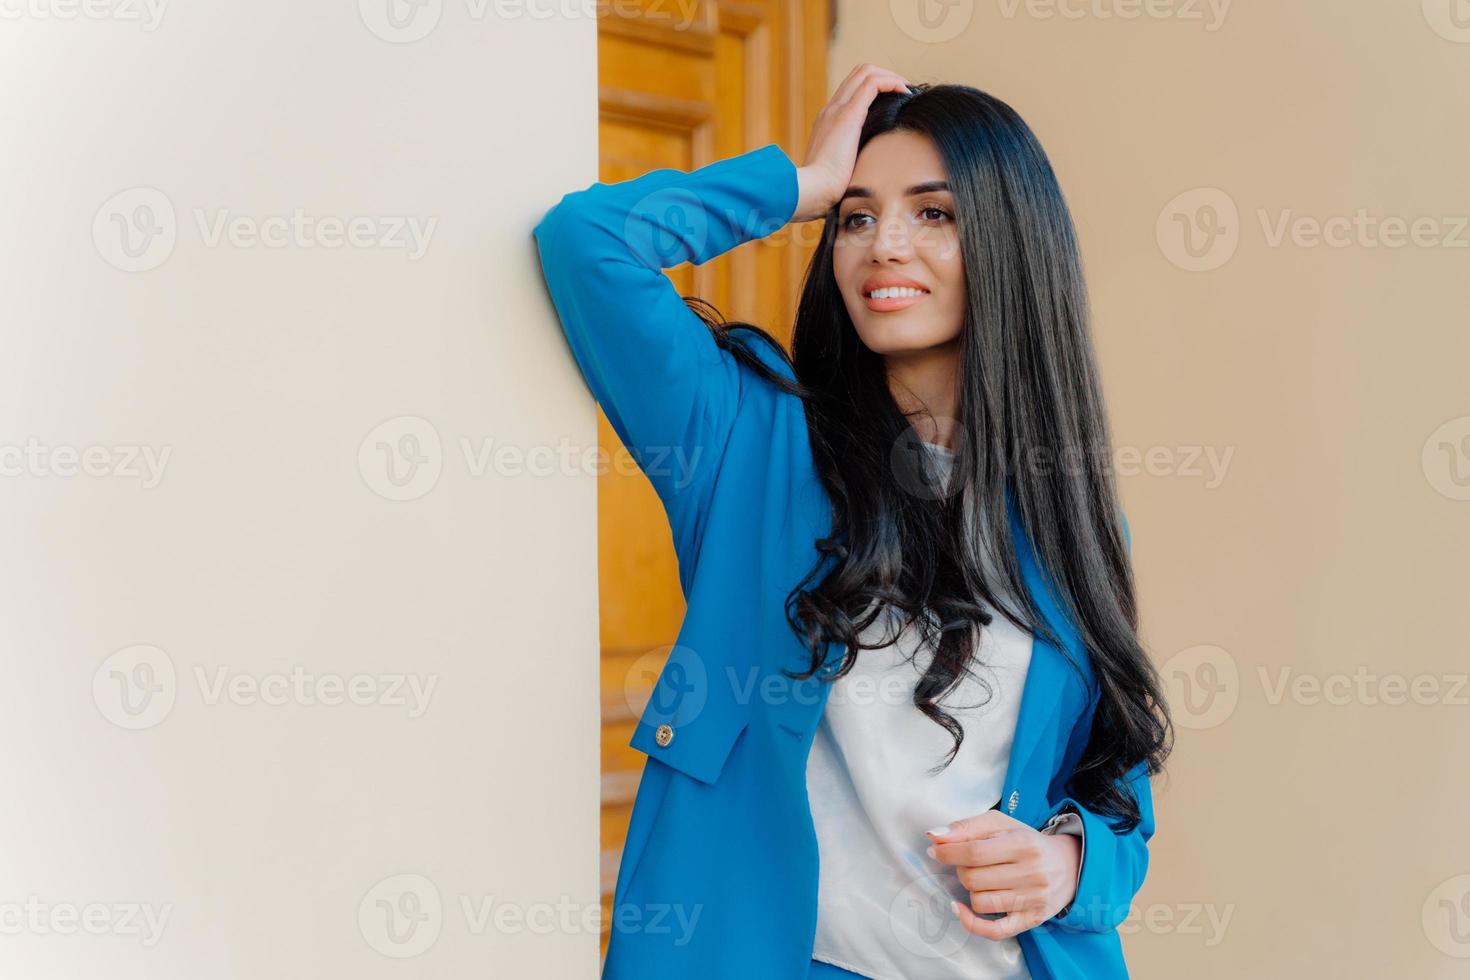 magnifique femme d'affaires aux longs cheveux noirs luxueux, vêtue d'un costume bleu formel et d'une chemise blanche, maquillée, concentrée à distance, sourit doucement, se penche avec l'épaule sur le mur blanc. photo